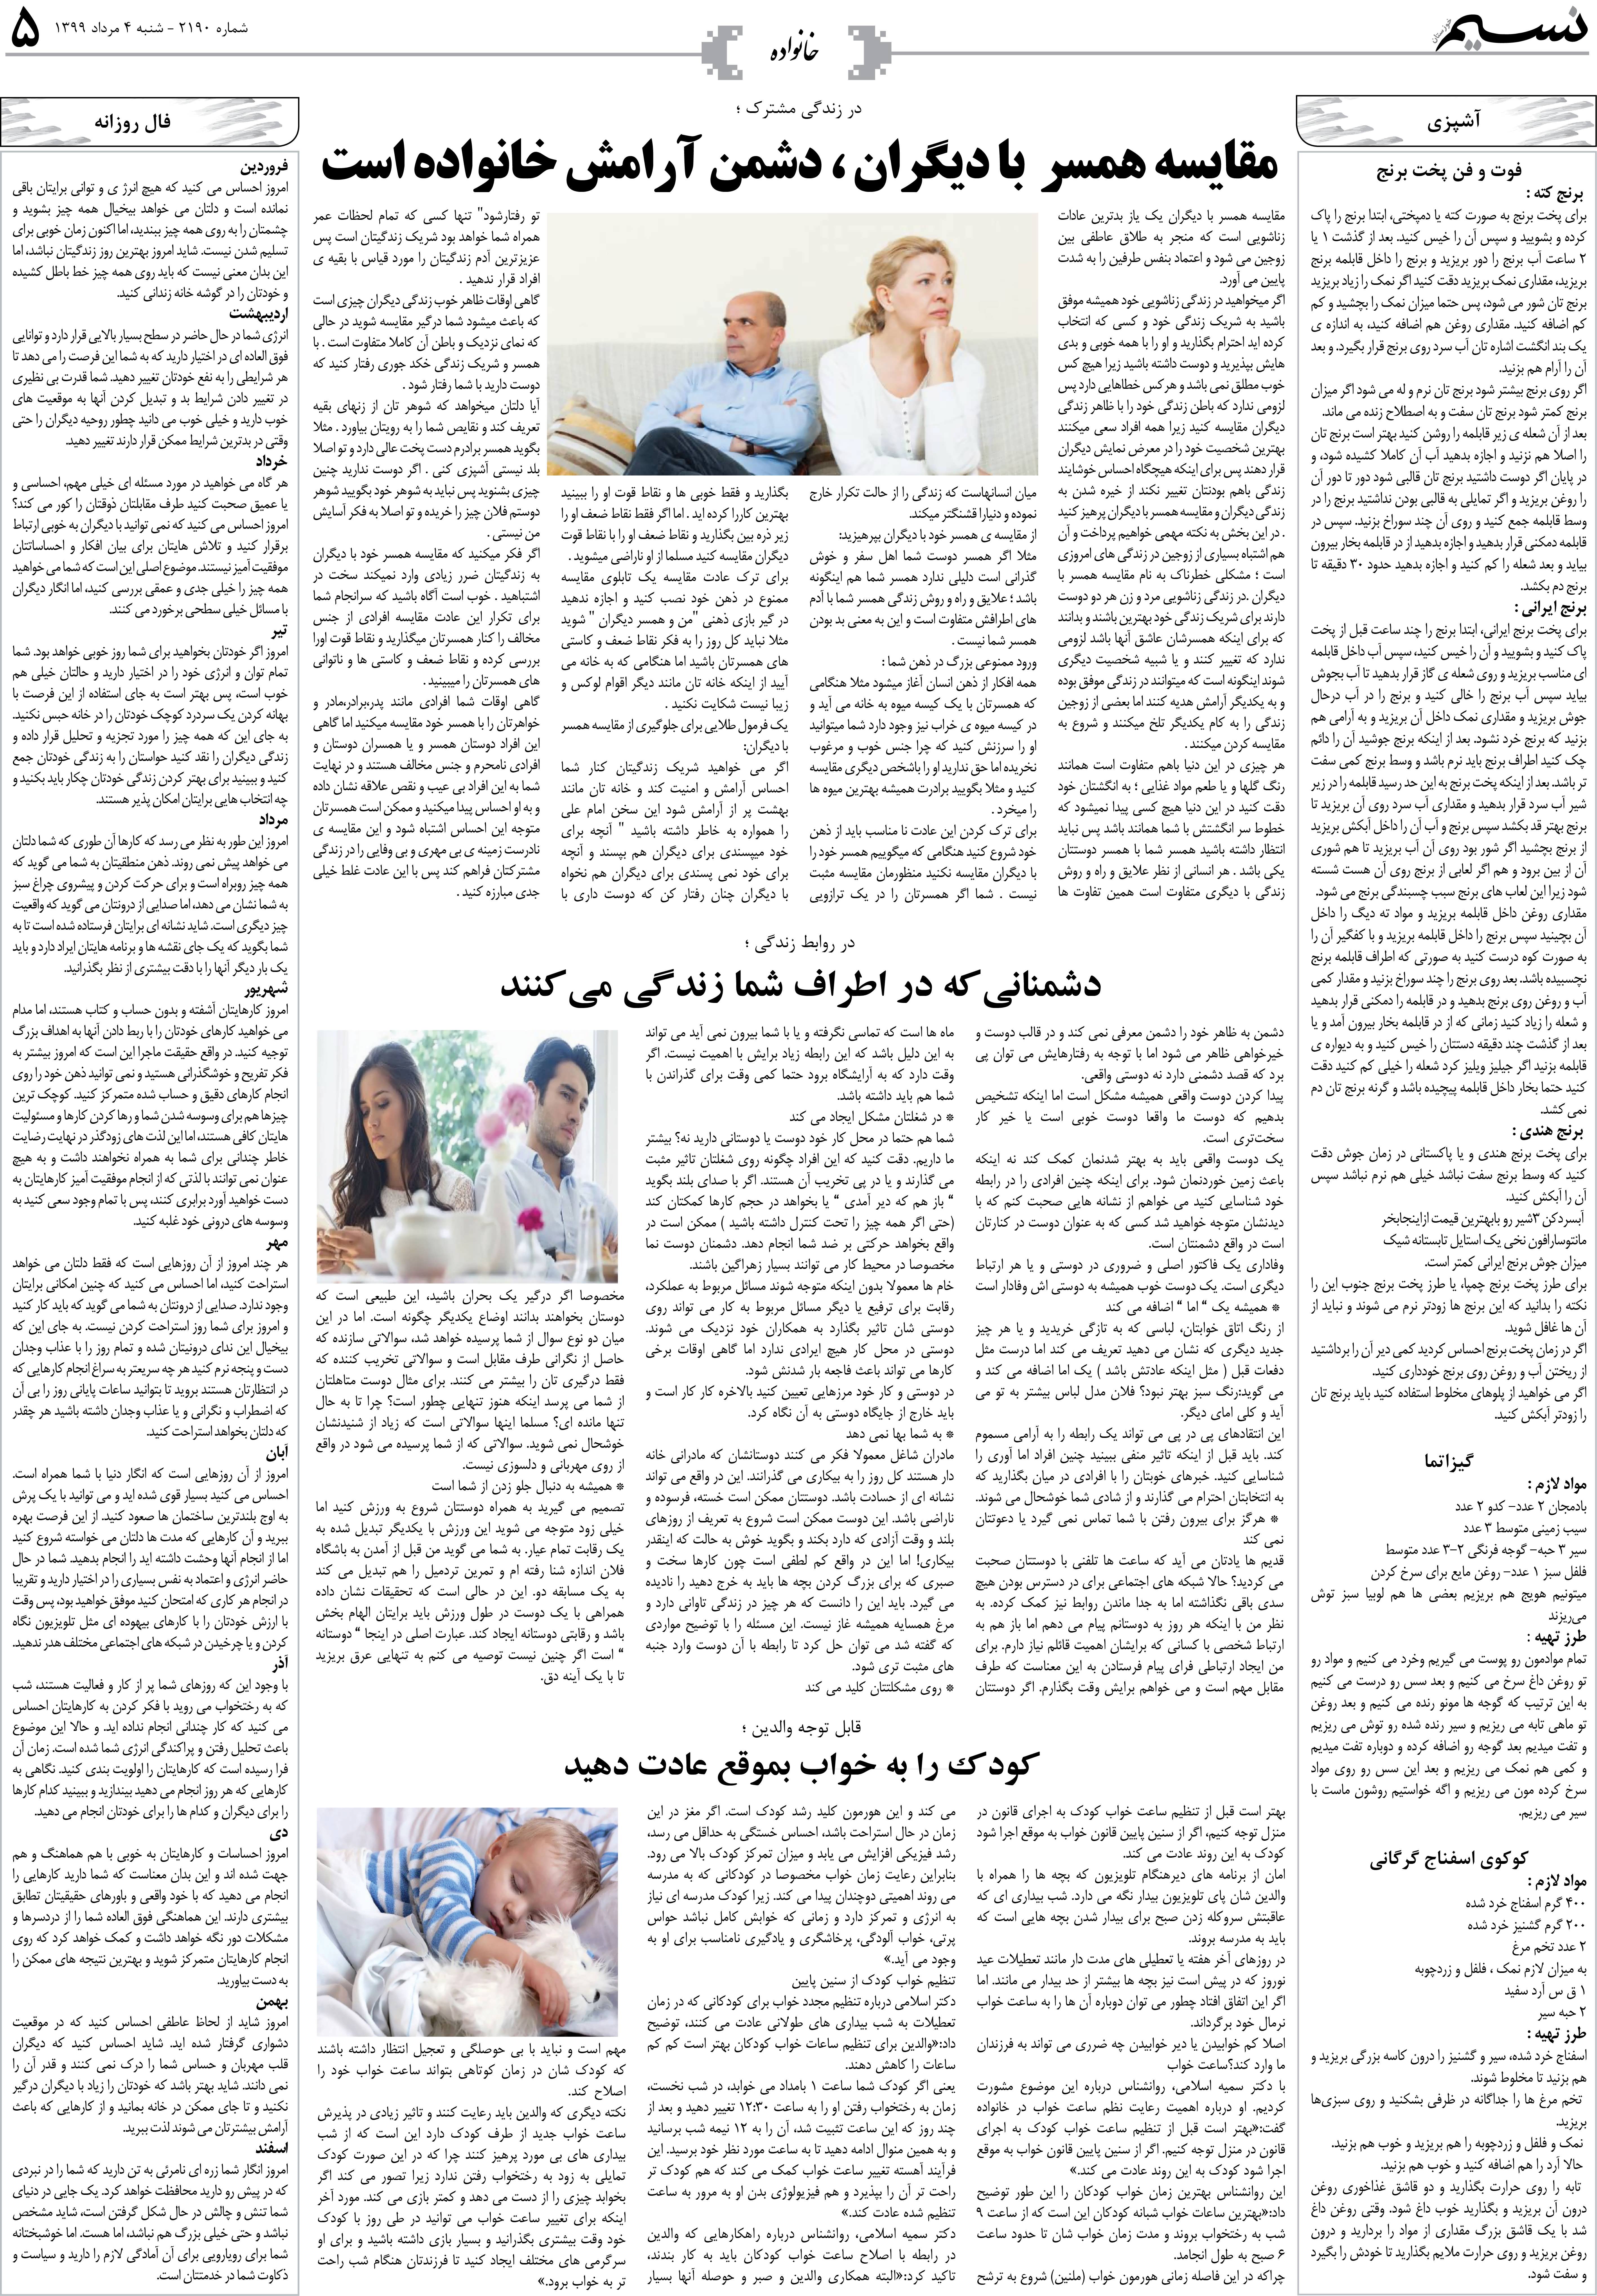 صفحه خانواده روزنامه نسیم شماره 2190